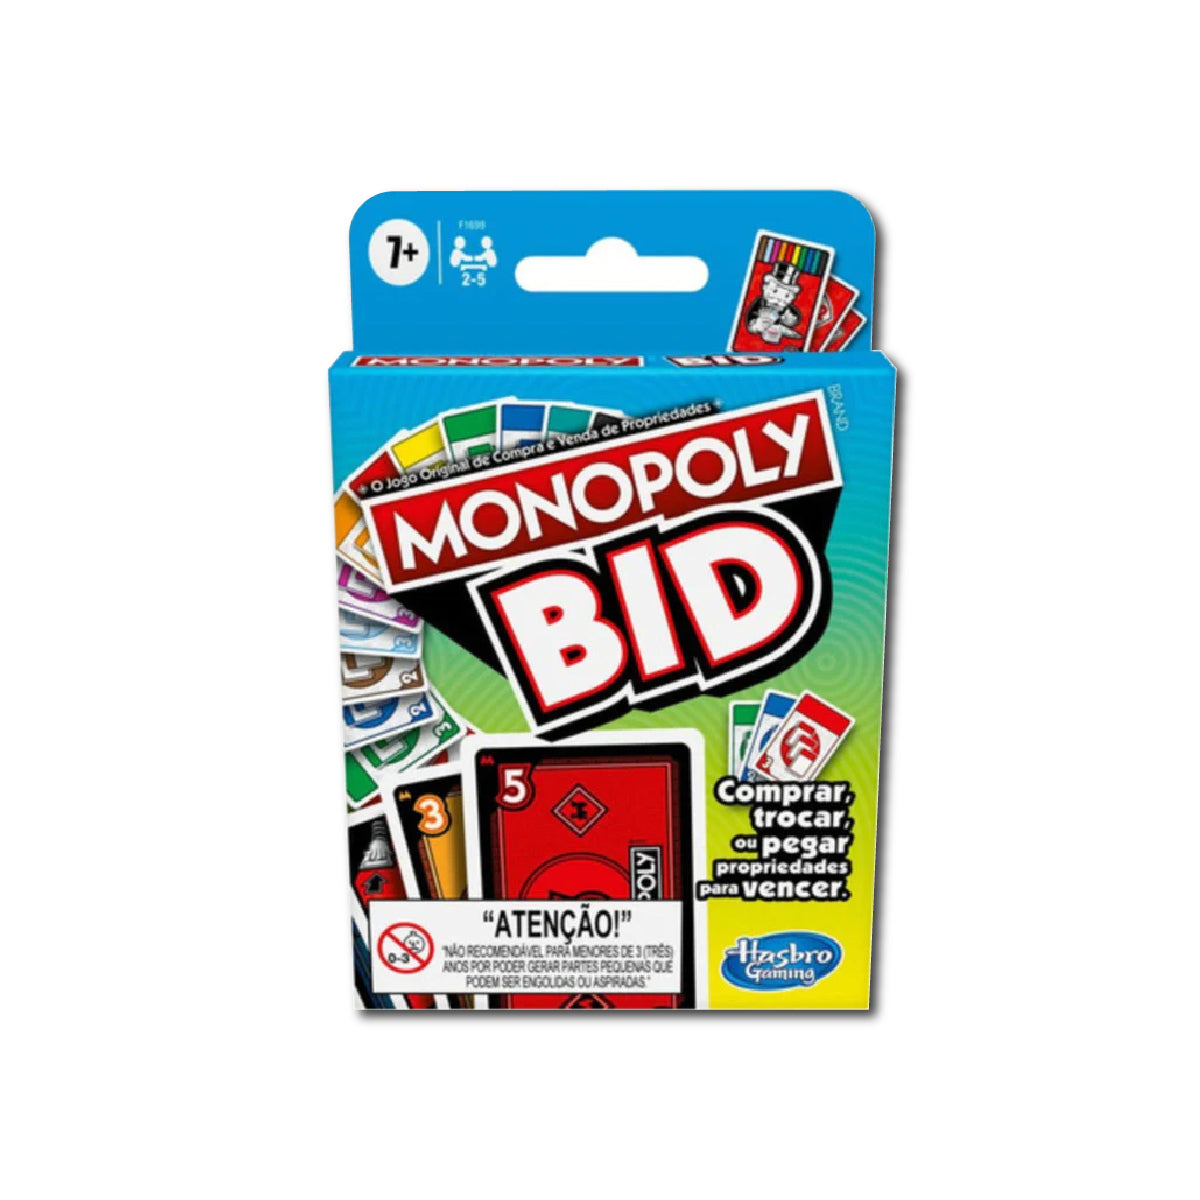 Juego de Mesa Hasbro Monopoly Bid